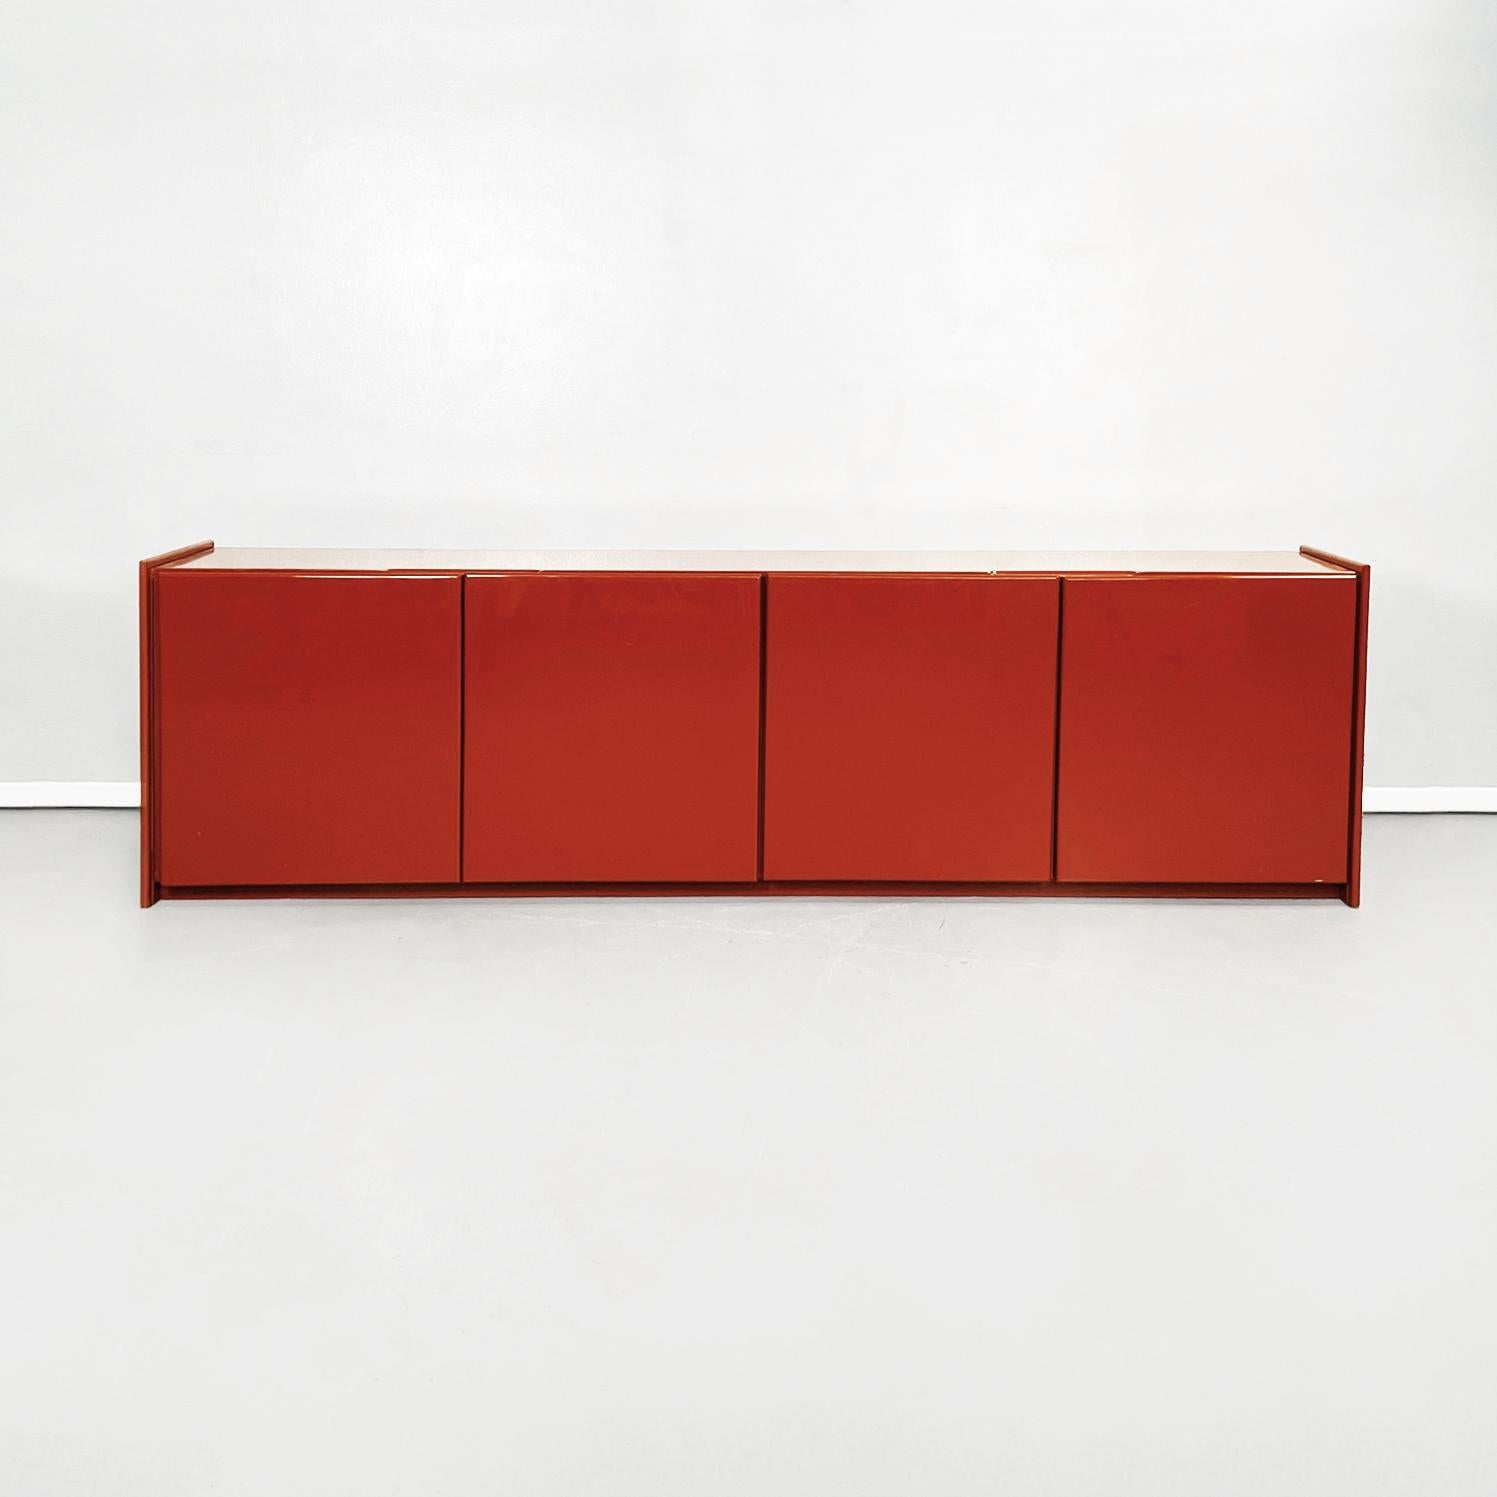 Italienisches Mid-Century Modernes rechteckiges rot lackiertes Massivholz Sideboard, 1980er Jahre
Rechteckige Anrichte aus rot lackiertem Massivholz mit abgerundeten Ecken. Die Anrichte hat 4 Türen mit Scharnieren und in jeder Tür befindet sich ein